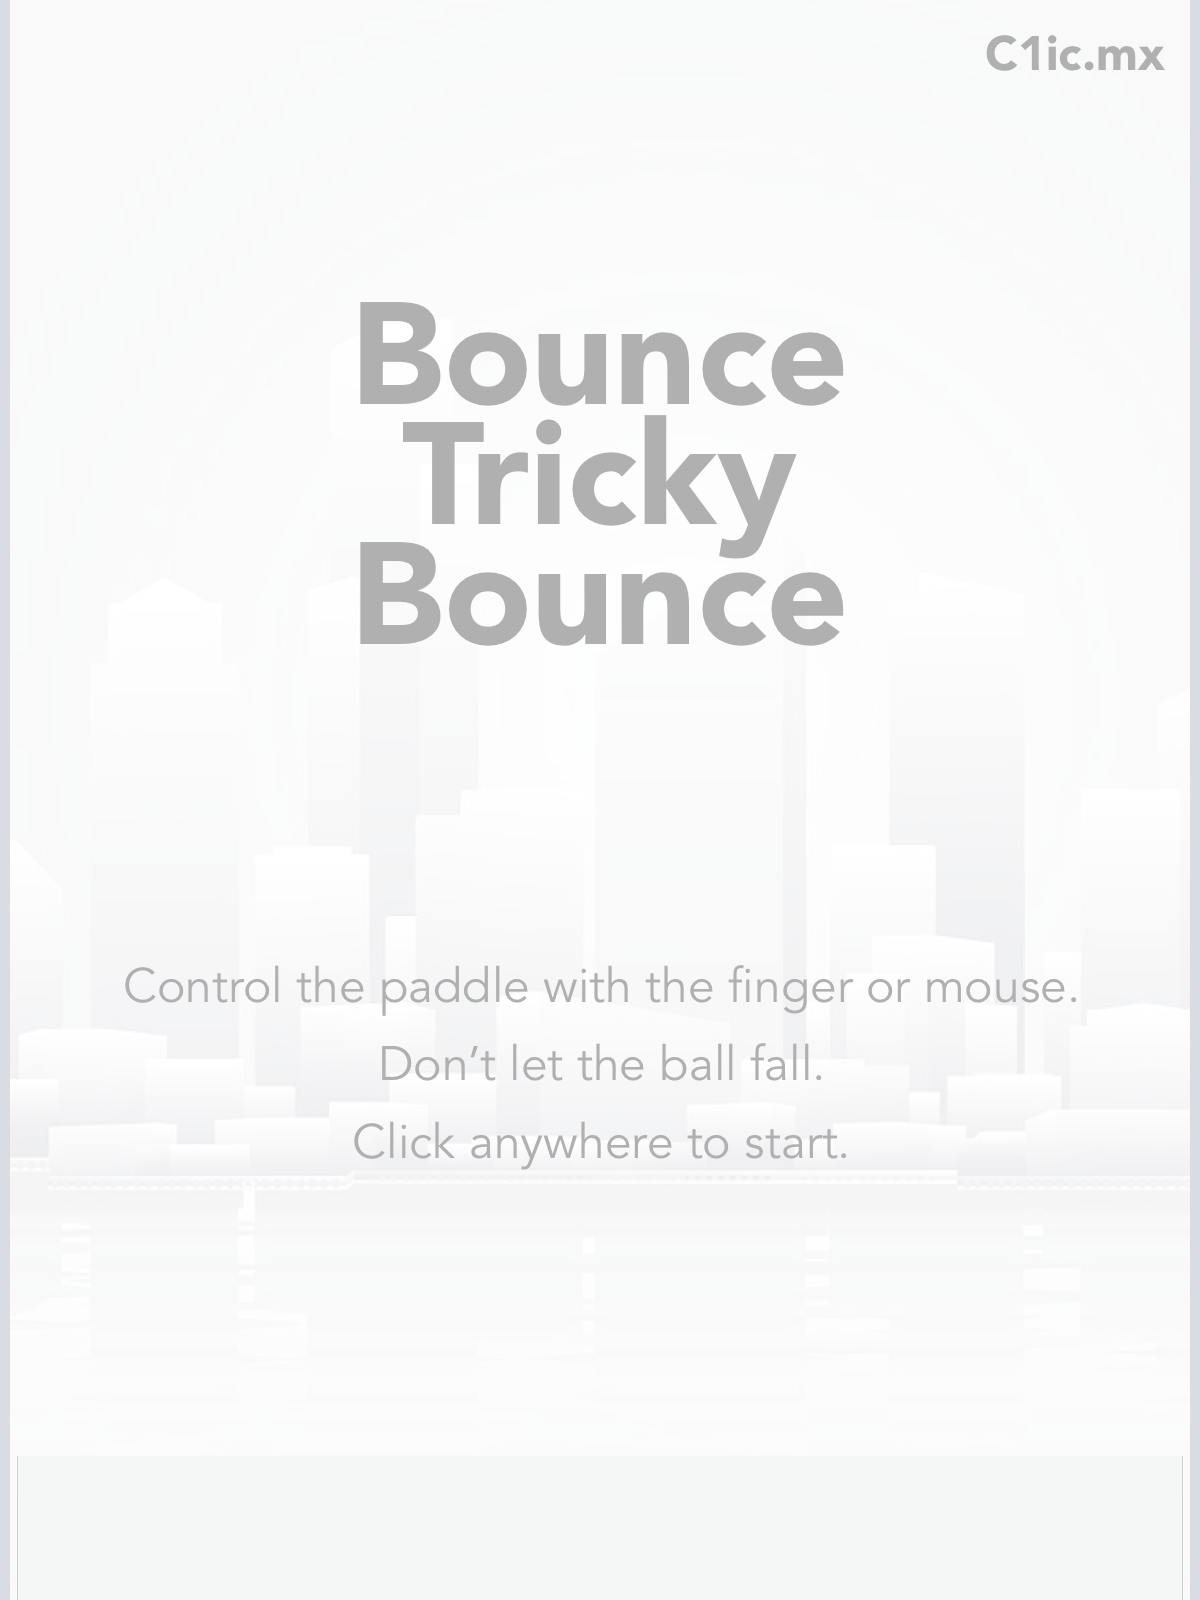 tricky Bounce